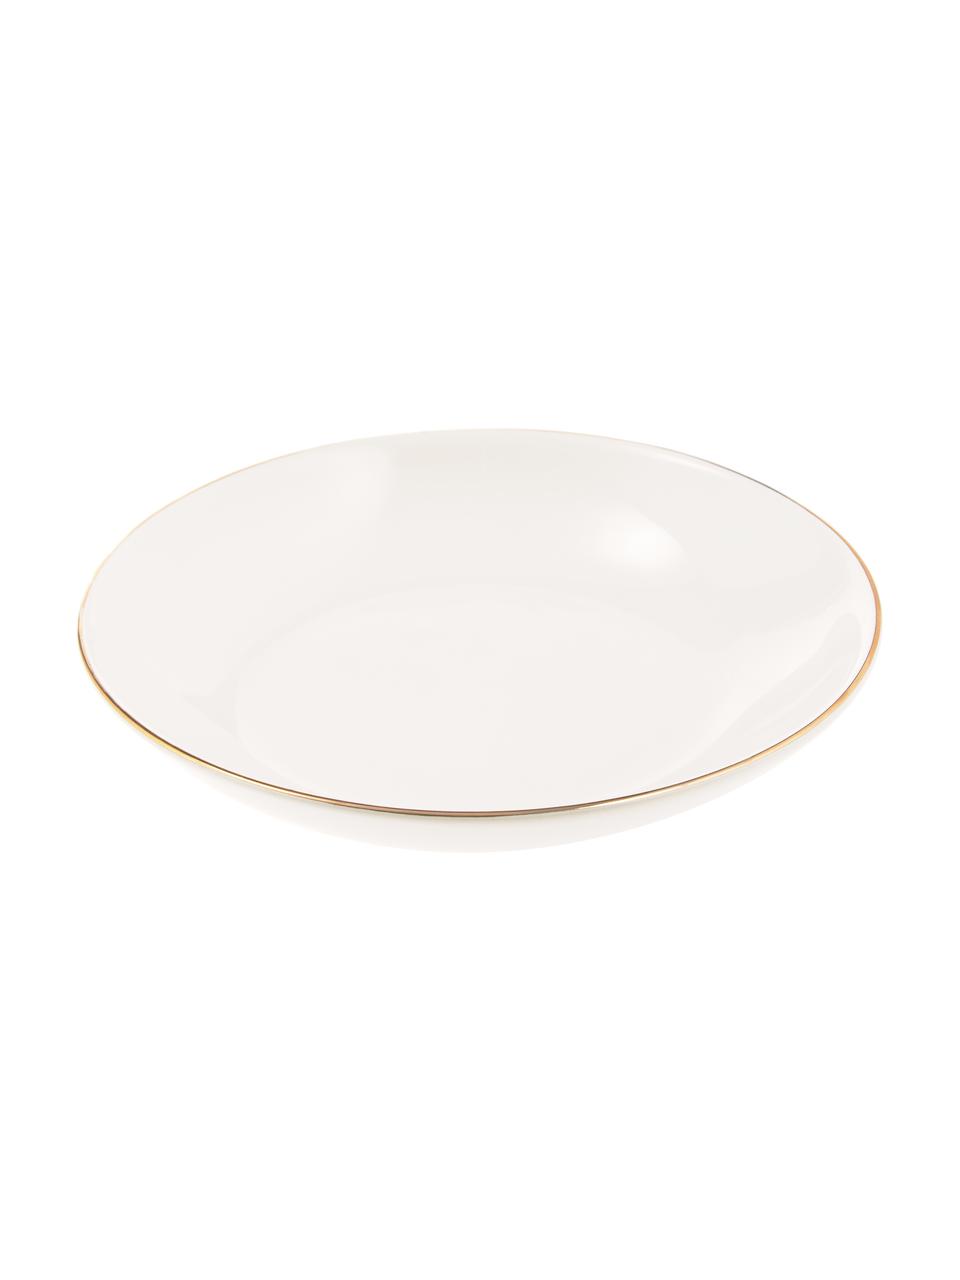 Assiette creuse artisanale céramique Allure, 6 pièces, Céramique, Blanc, couleur dorée, Ø 21 cm